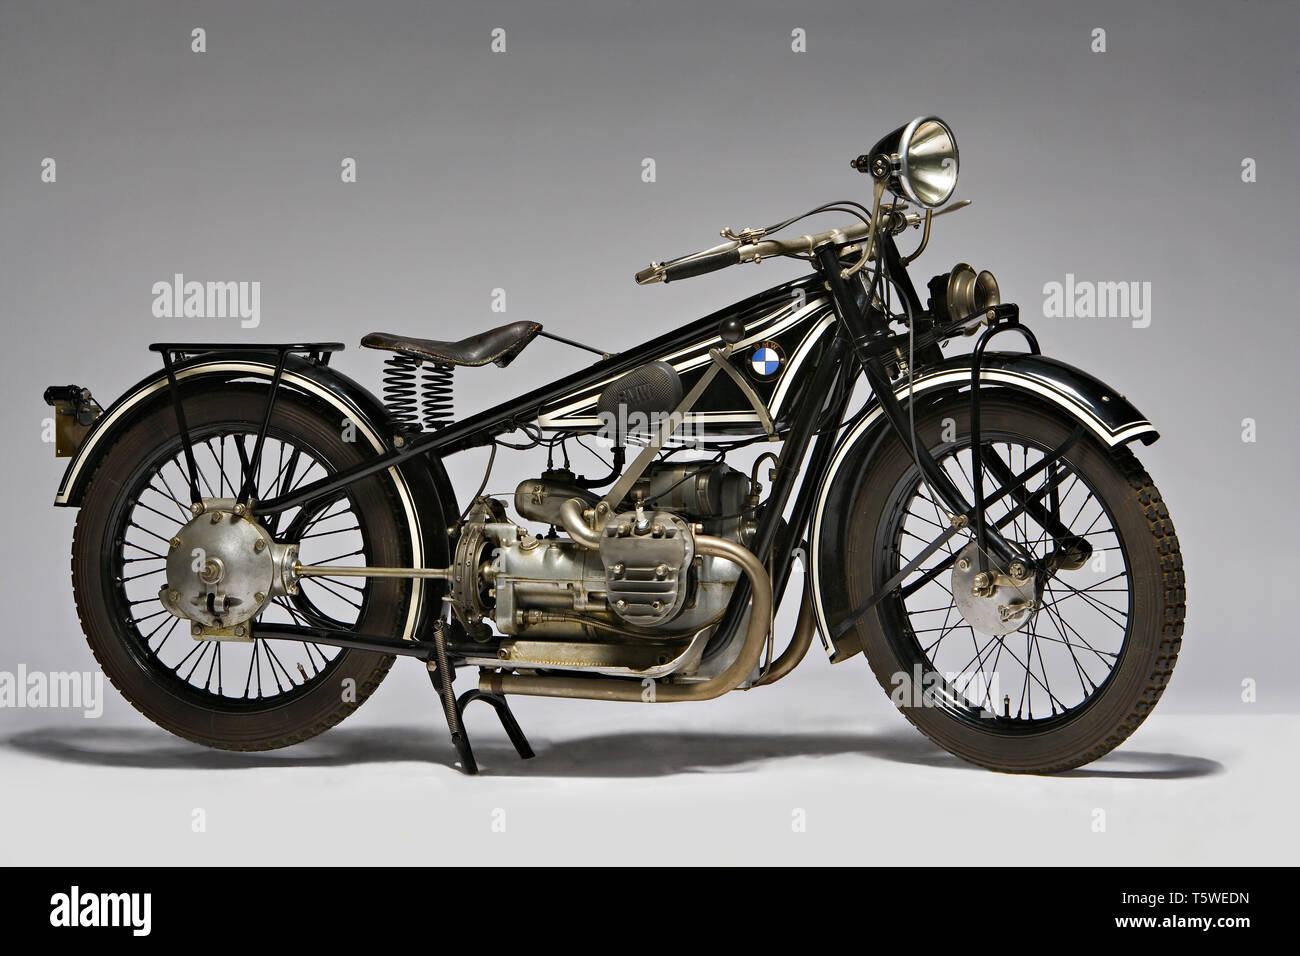 Moto d'Epoca BMW R 42 Marca: Bayerische Motoren Werke modello: R 42 nazione: Germania anno - Mónaco: 1927 condizioni: restaurata cili Foto de stock